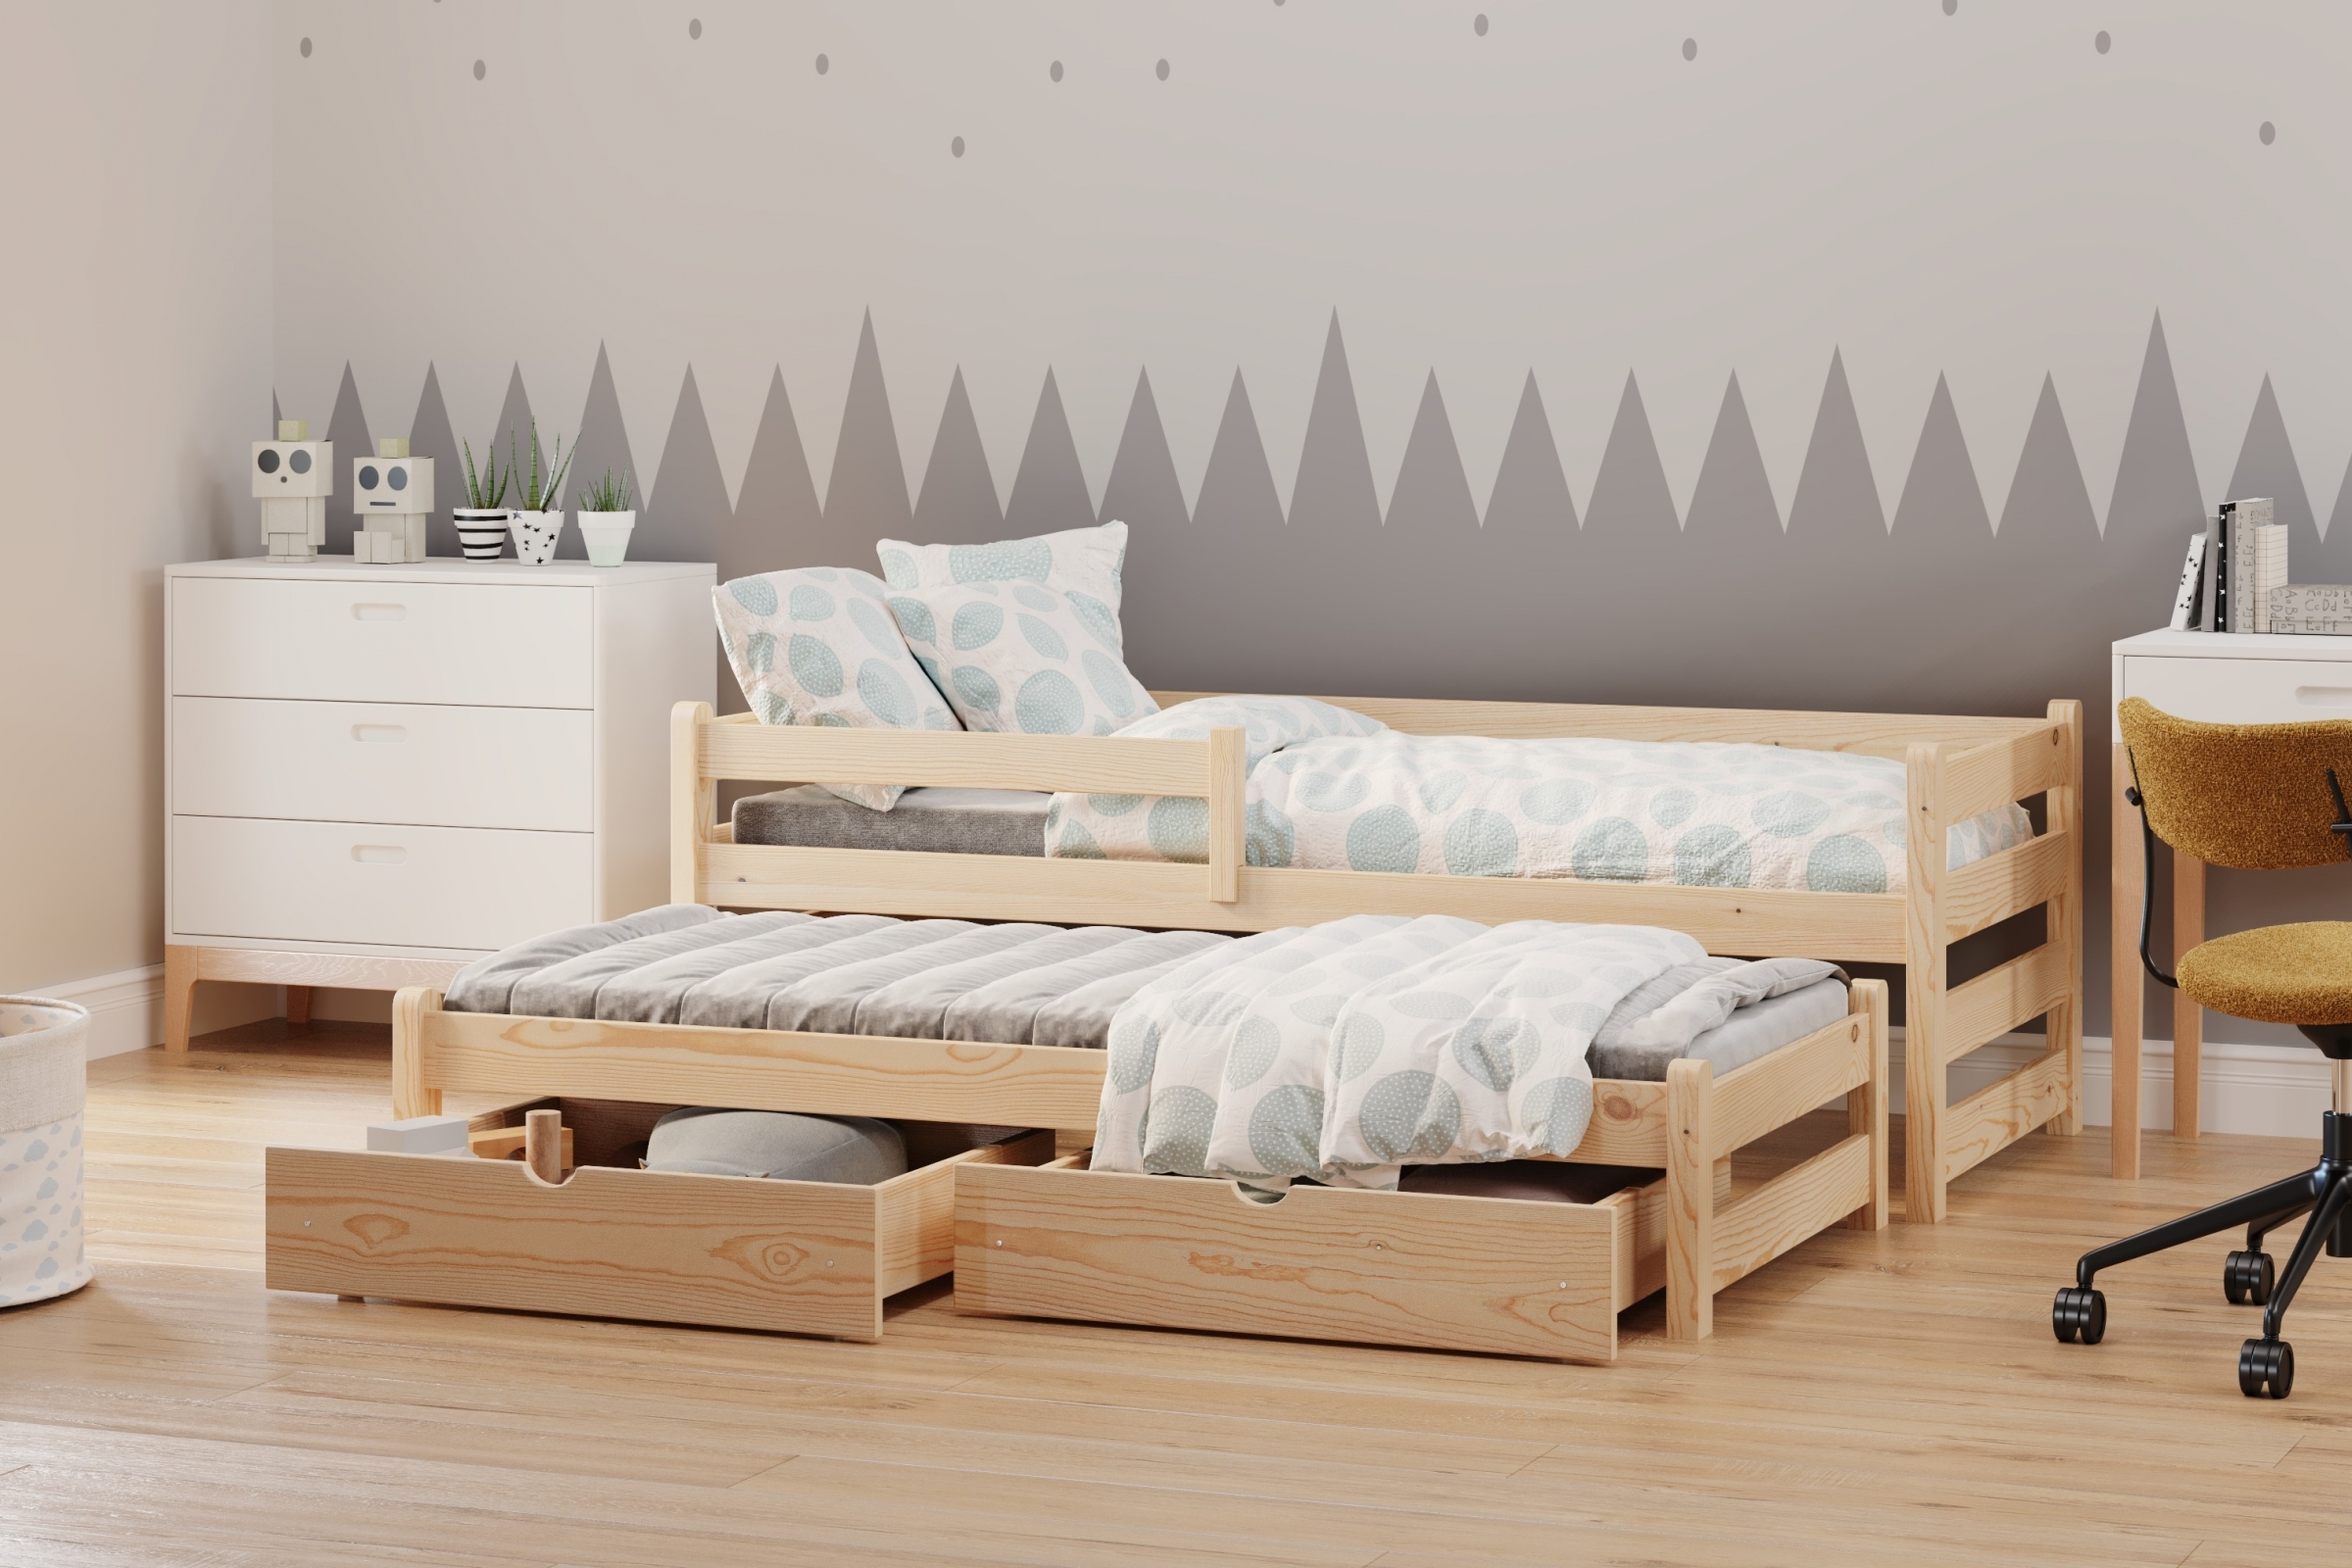 Detská posteľ prízemná s výsuvným lôžkom Alis DPV 001 - Borovica, 80x200 Posteľ prízemná s výsuvným lôžkom Alis - Farba Borovica - vizualizácia